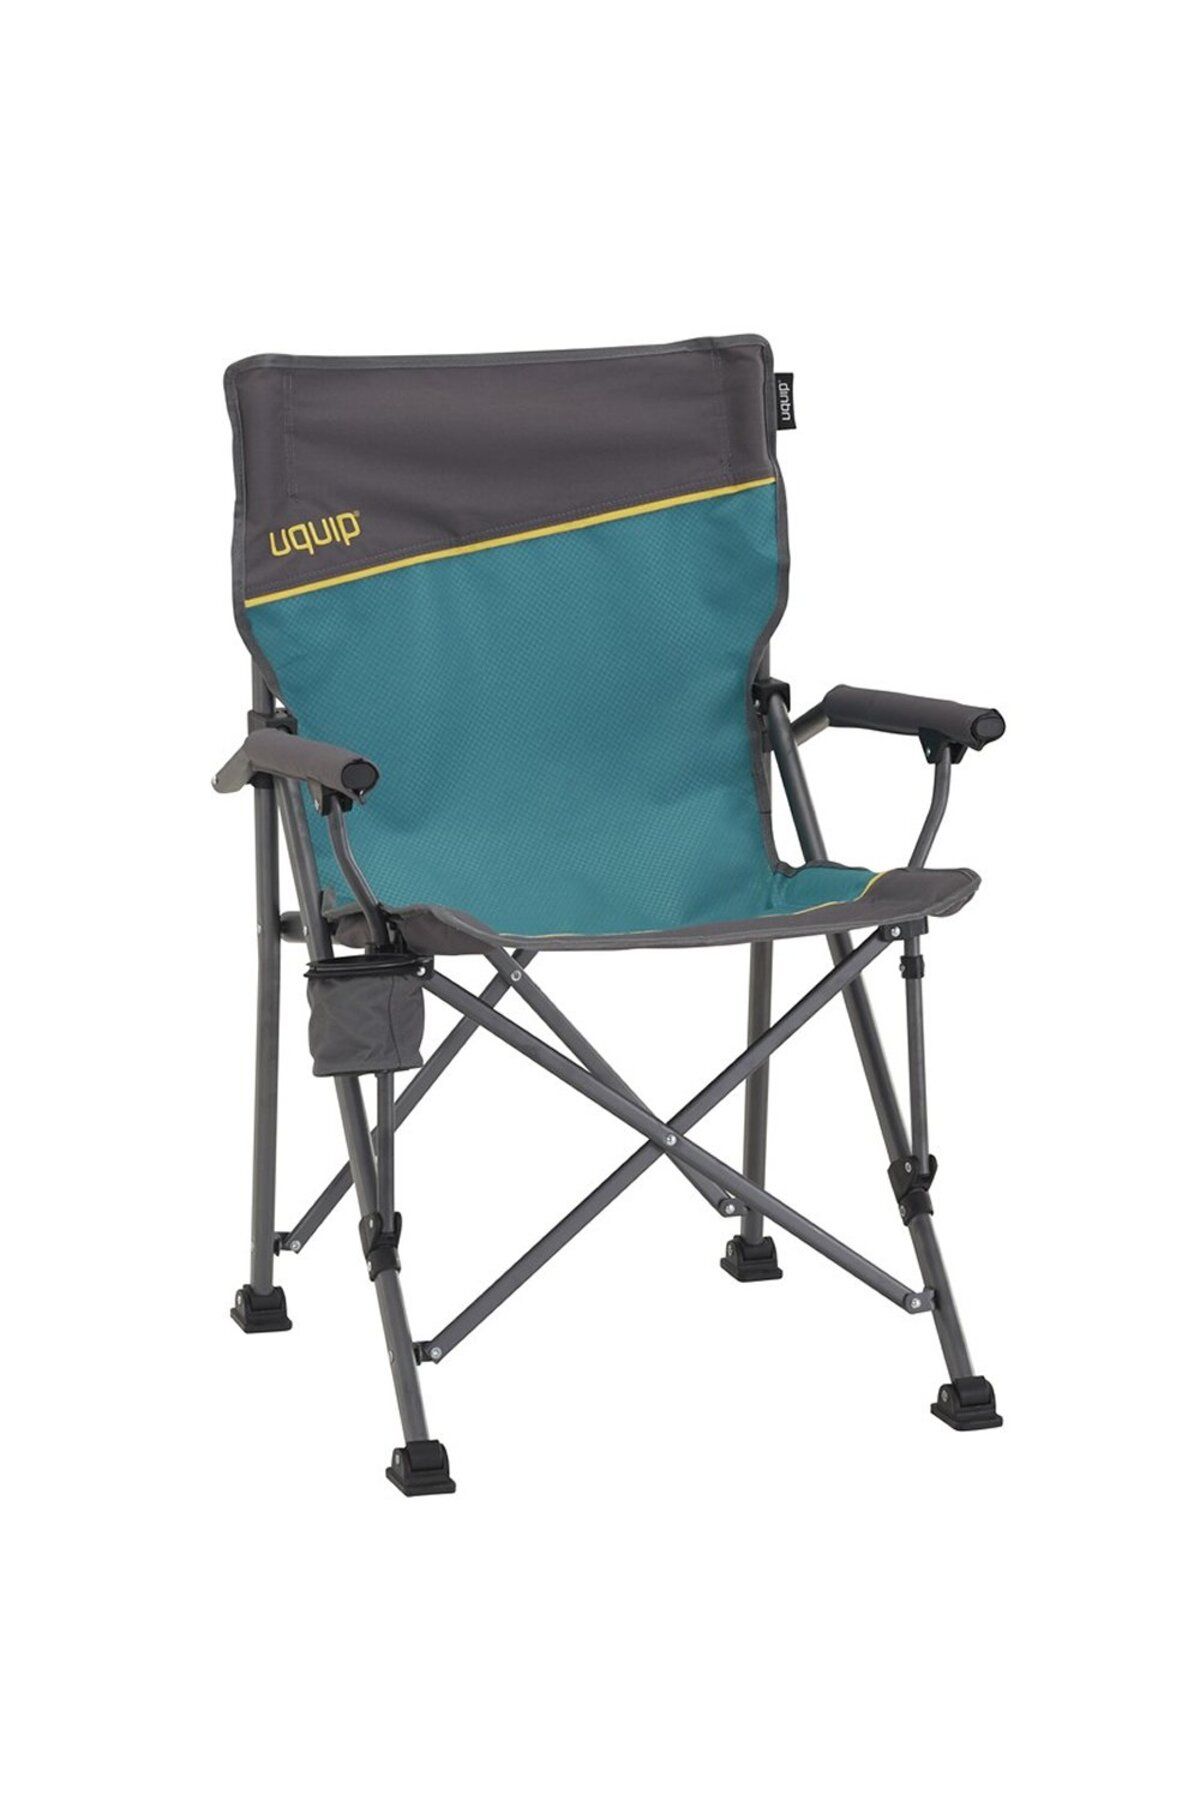 Uquip Roxy Yüksek Konforlu &amp; Takviyeli Katlanır Kamp Sandalyesi Mavi